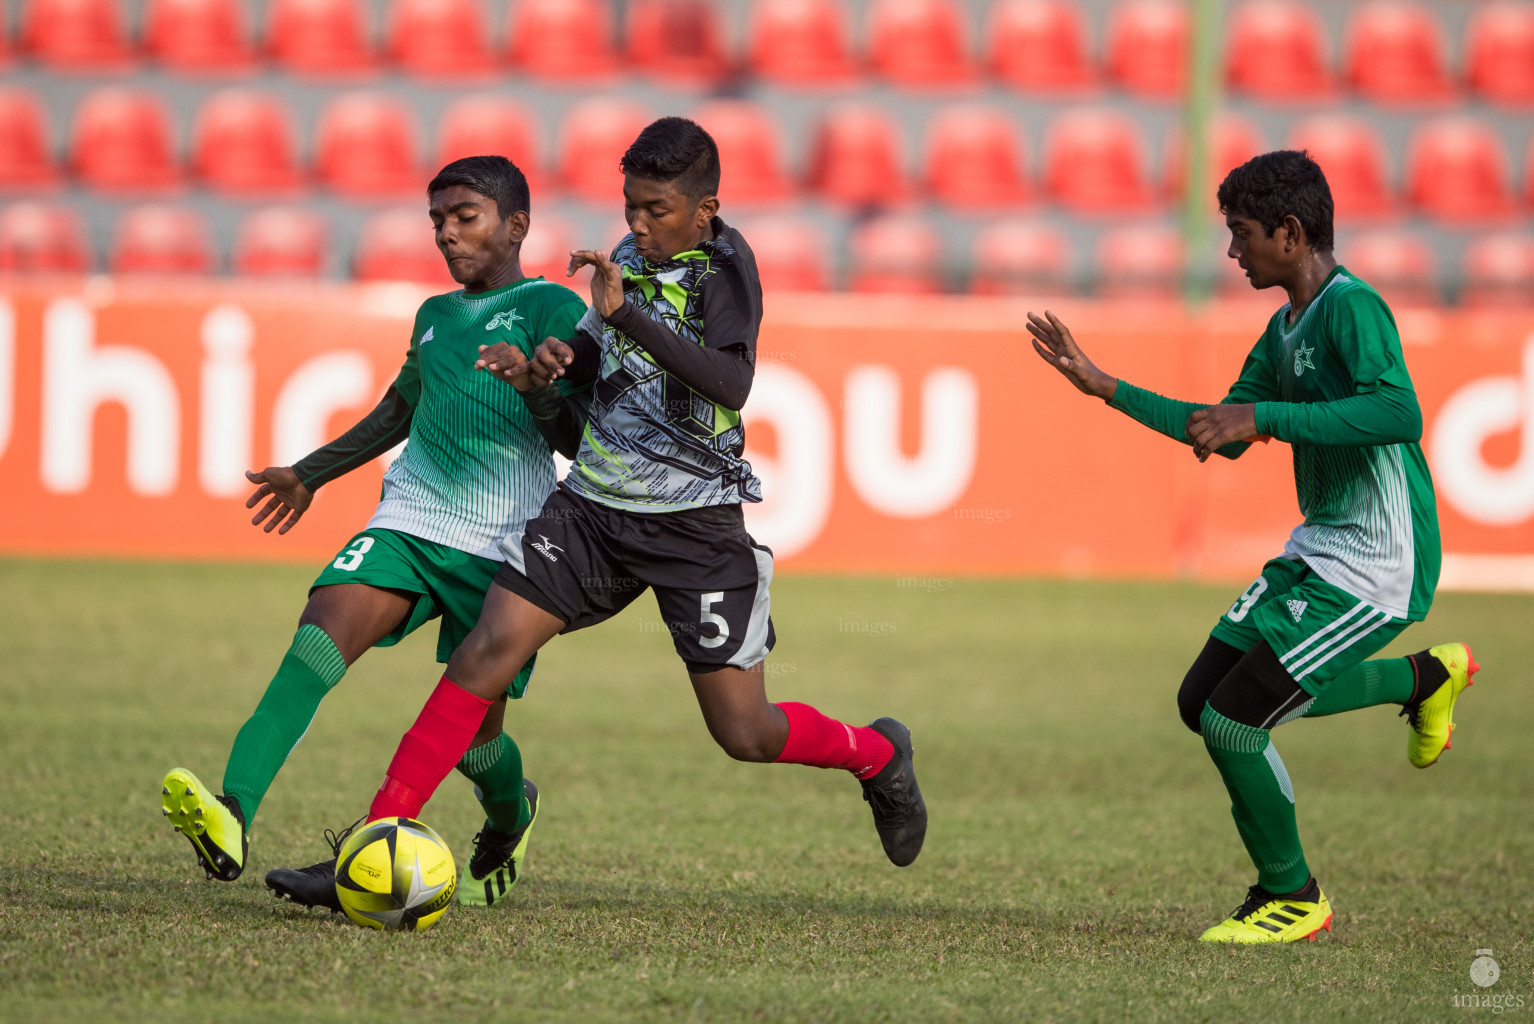 Aminiya School vs Ahmadhiyya School in Mamen Inter-School Football Tournament 2019 (U15) on 27th February 2019, Monday in Male' Maldives (Images.mv Photo: Suadh Abdul Sattar)